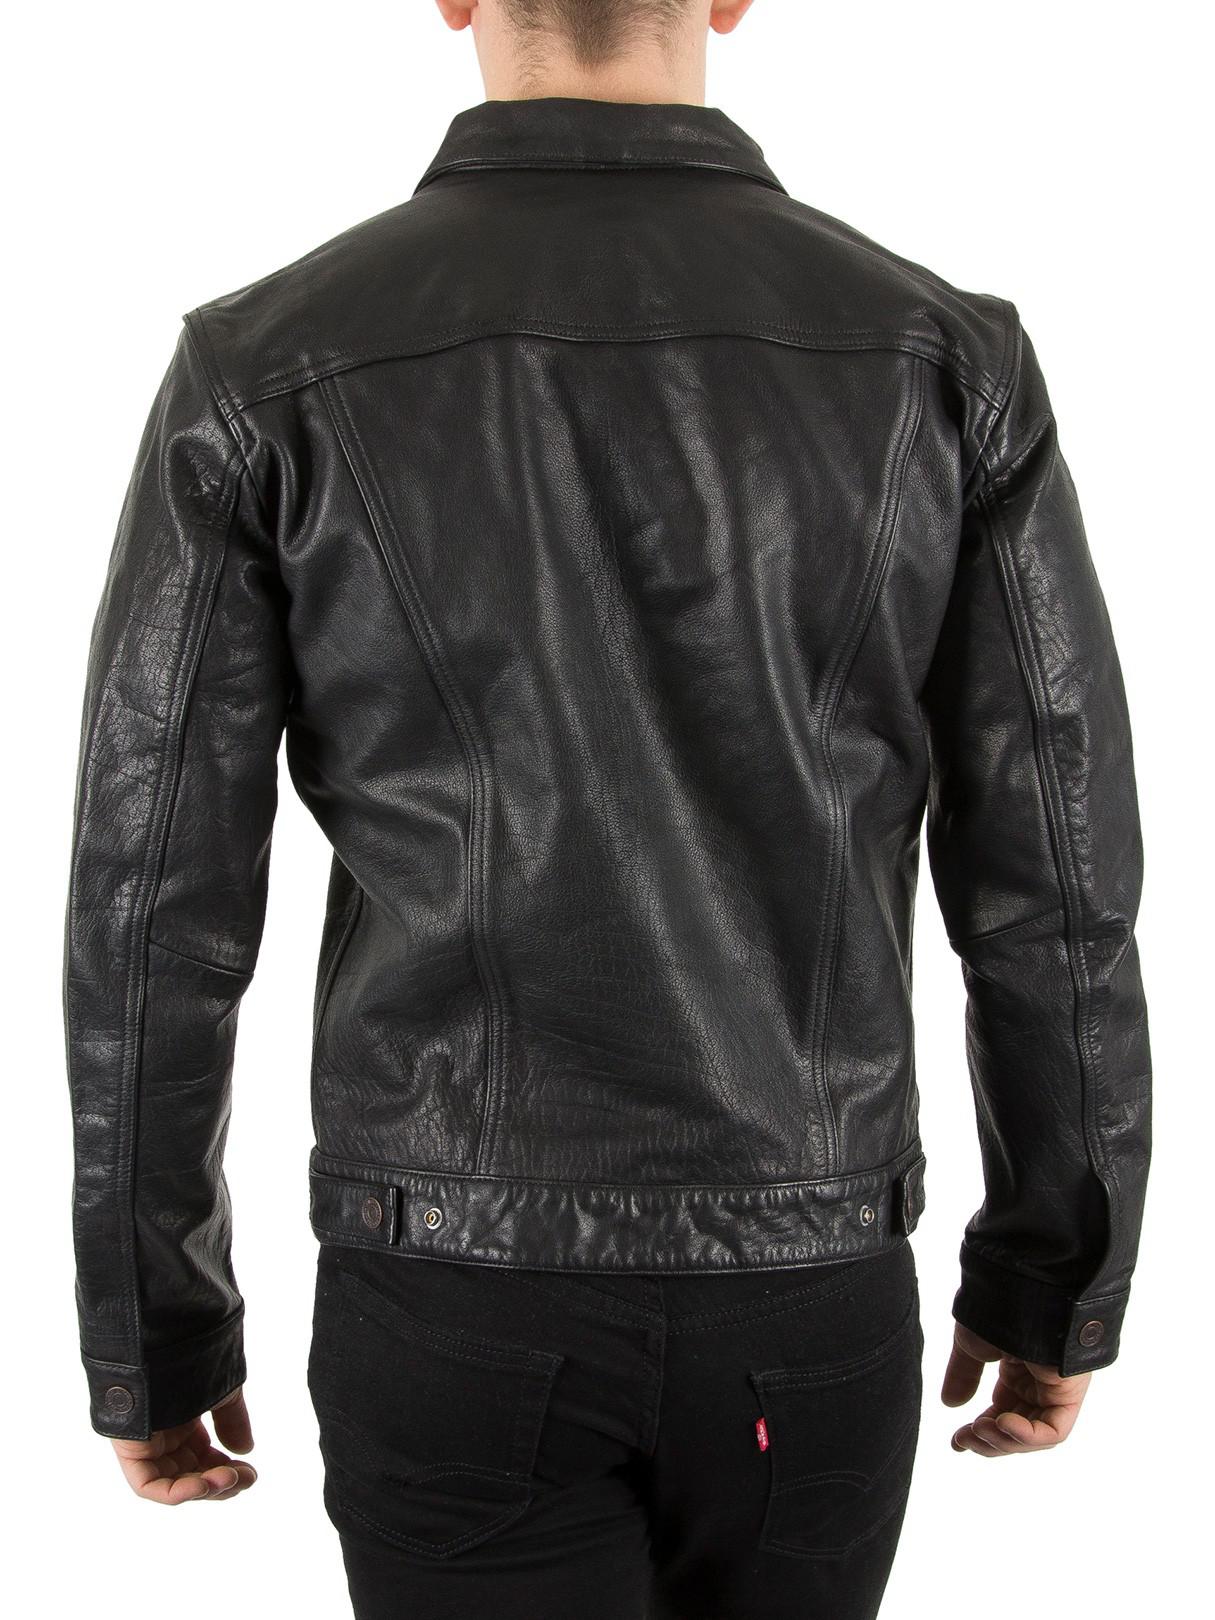 Levi's Black Buffalo Leather Trucker Jacket for Men - Lyst